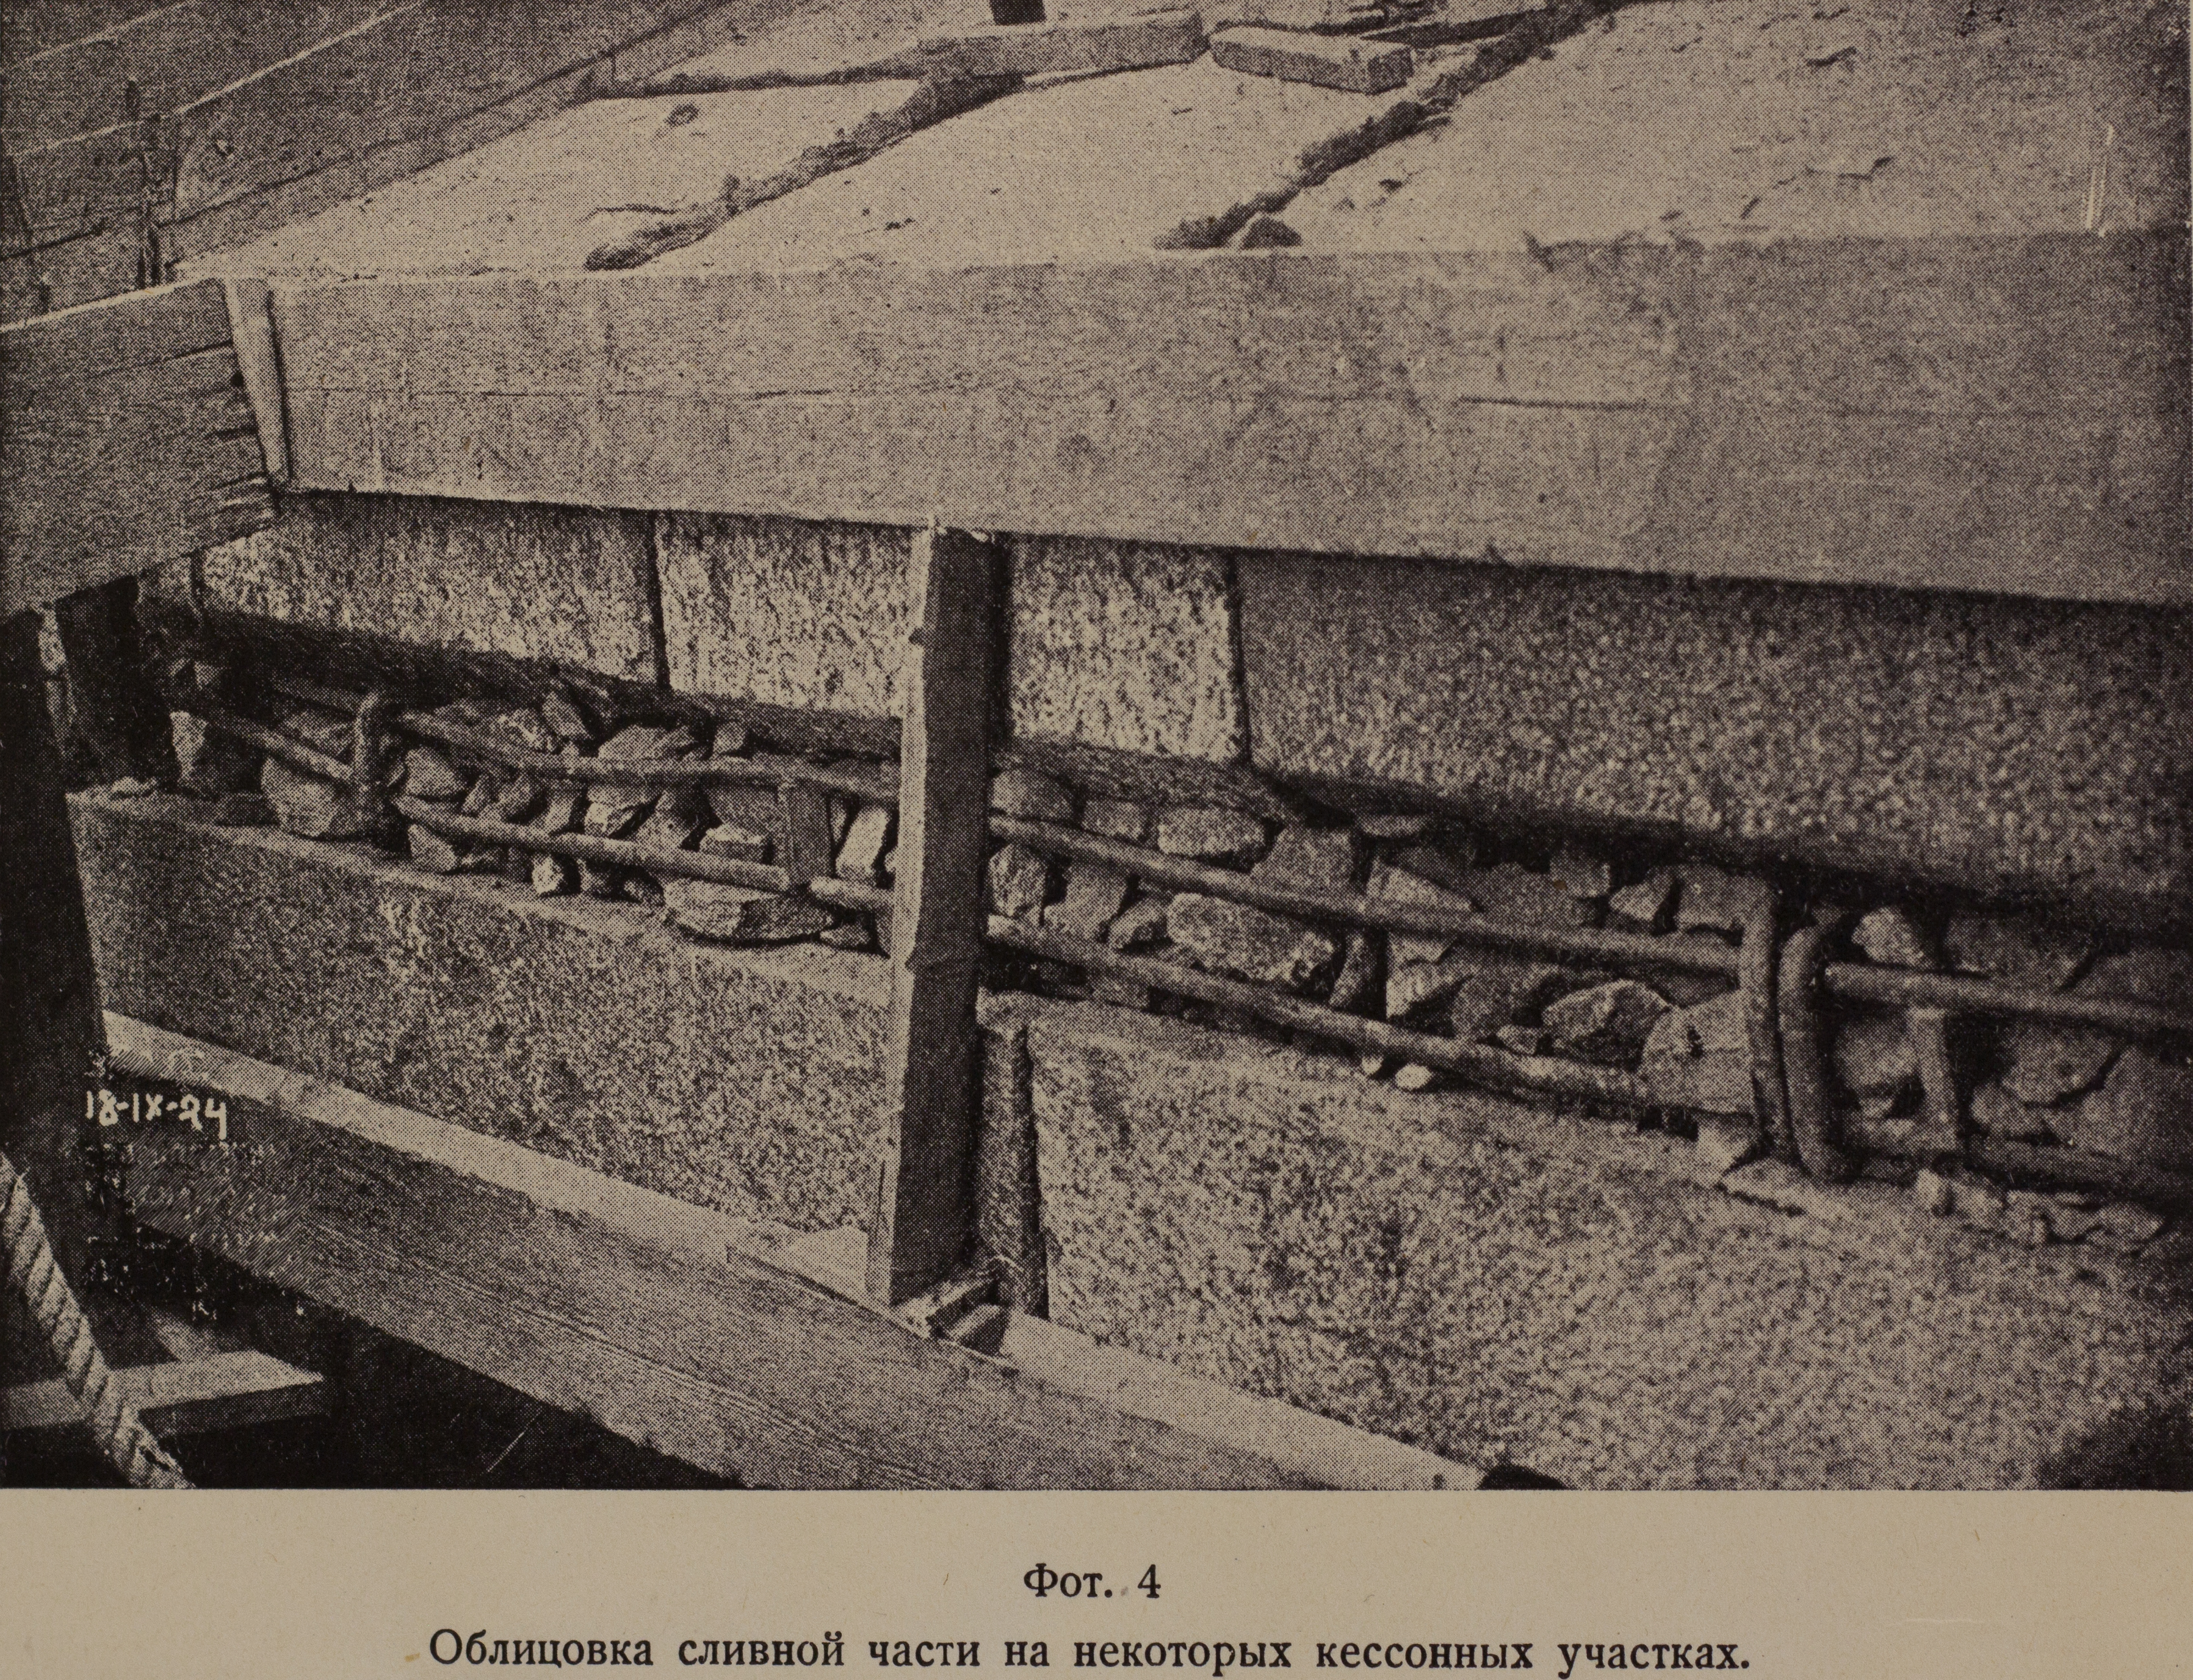 Облицовка сливной части на некоторых кессонных участках (1924 г.)